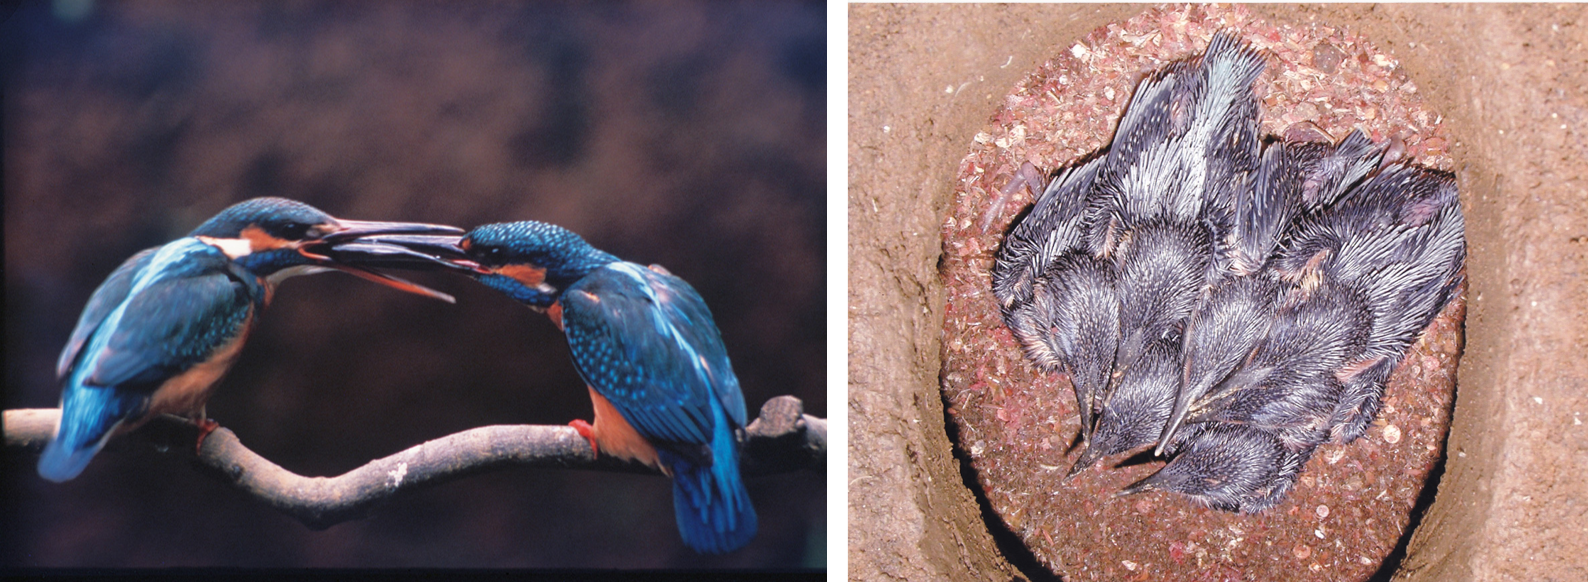 カワセミの求愛給餌行動（1994年6月）と産室内の様子（2008年6月）画像提供：国立科学博物館附属自然教育園
